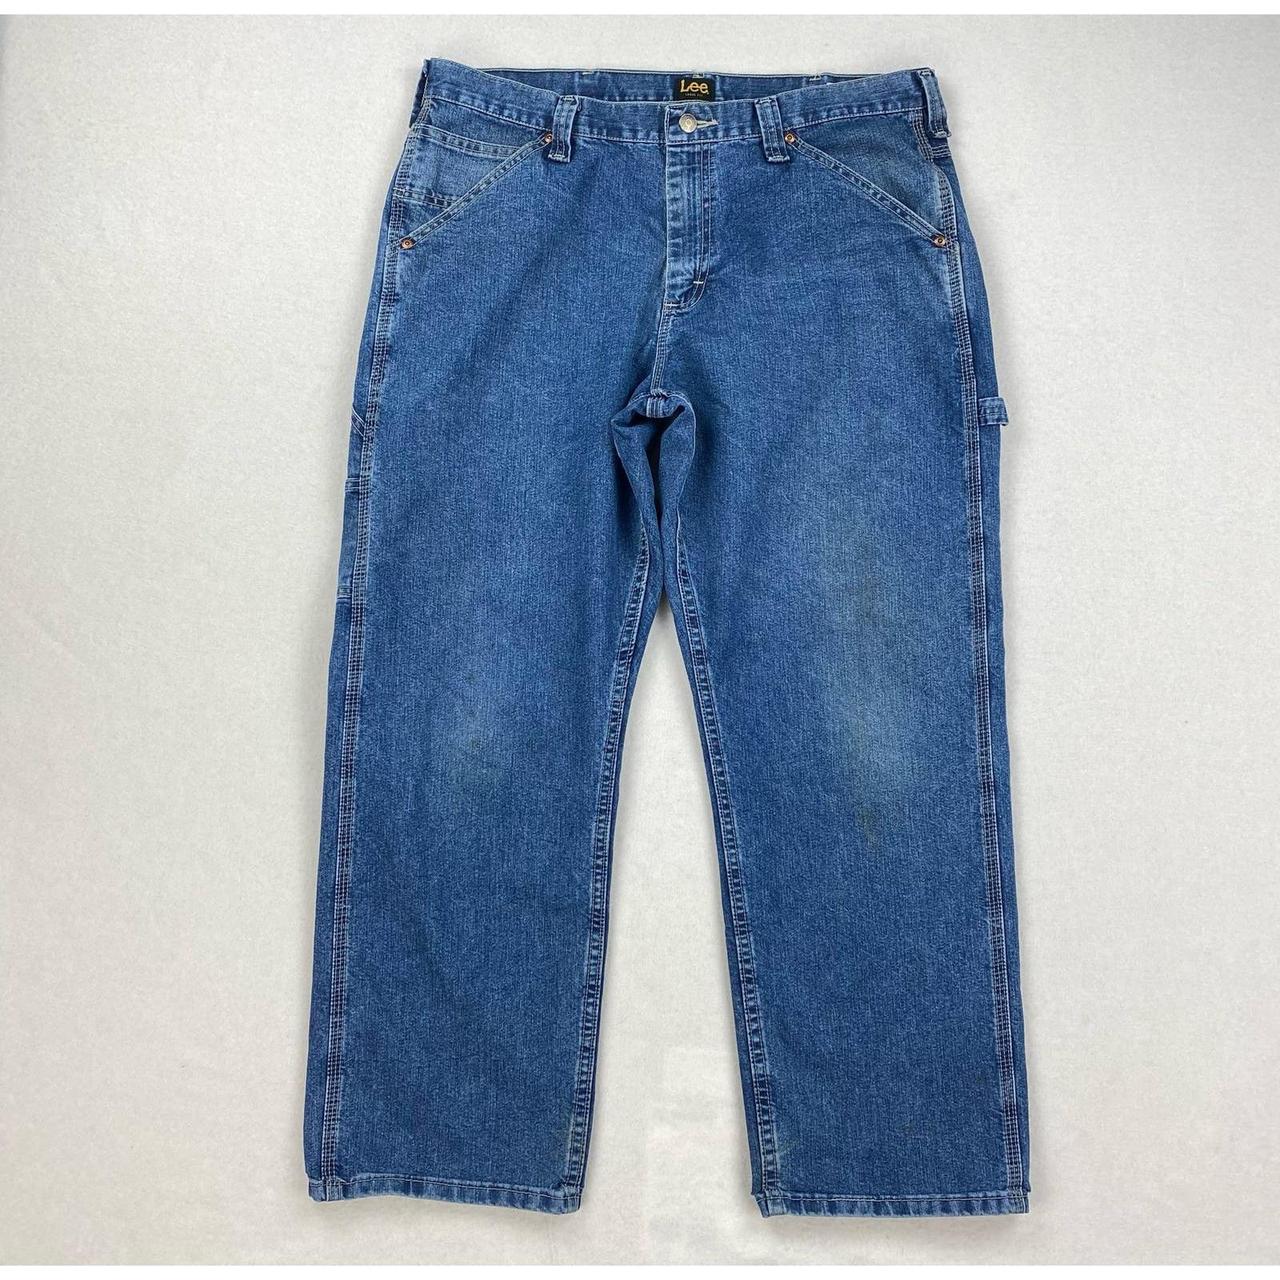 Vintage Lee Dungarees Carpenter Jeans Medium Wash... - Depop